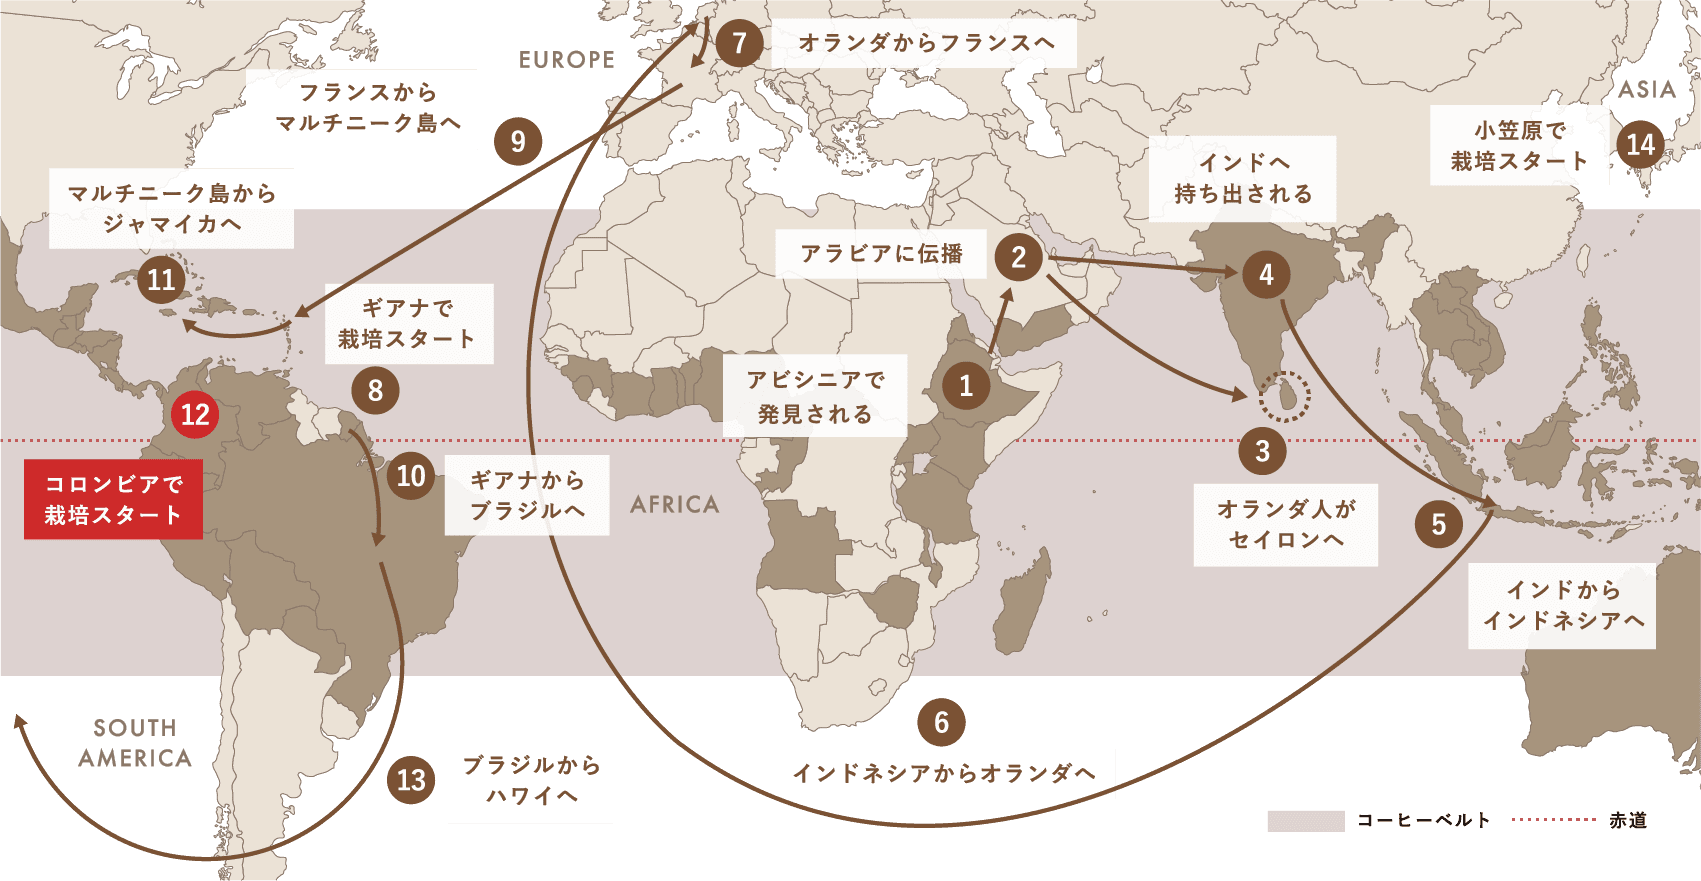 Spread of Coffee コーヒー栽培（アラビカ種）が世界中に広がった軌跡